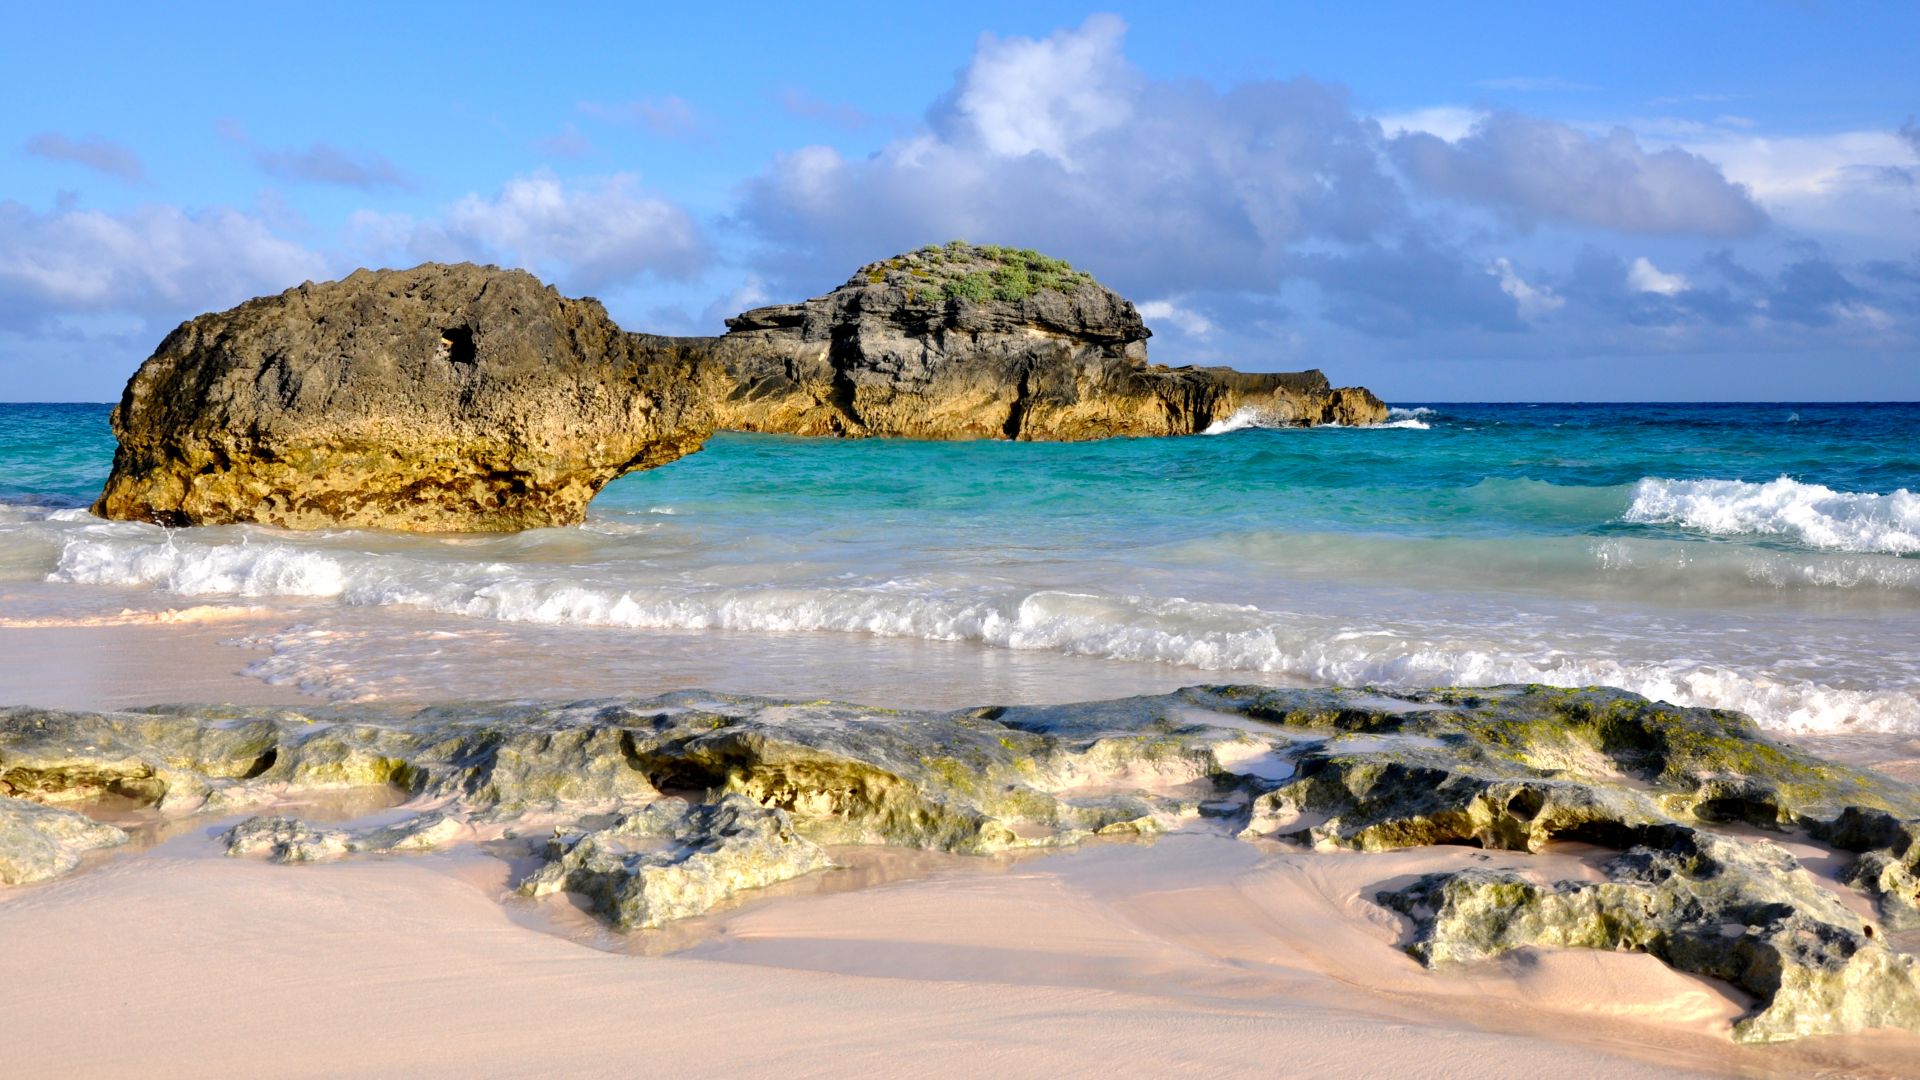 Horseshoe Bay Beach, Bermuda, Best beaches of 2016, Travellers Choice Awards 2016 (horizontal)